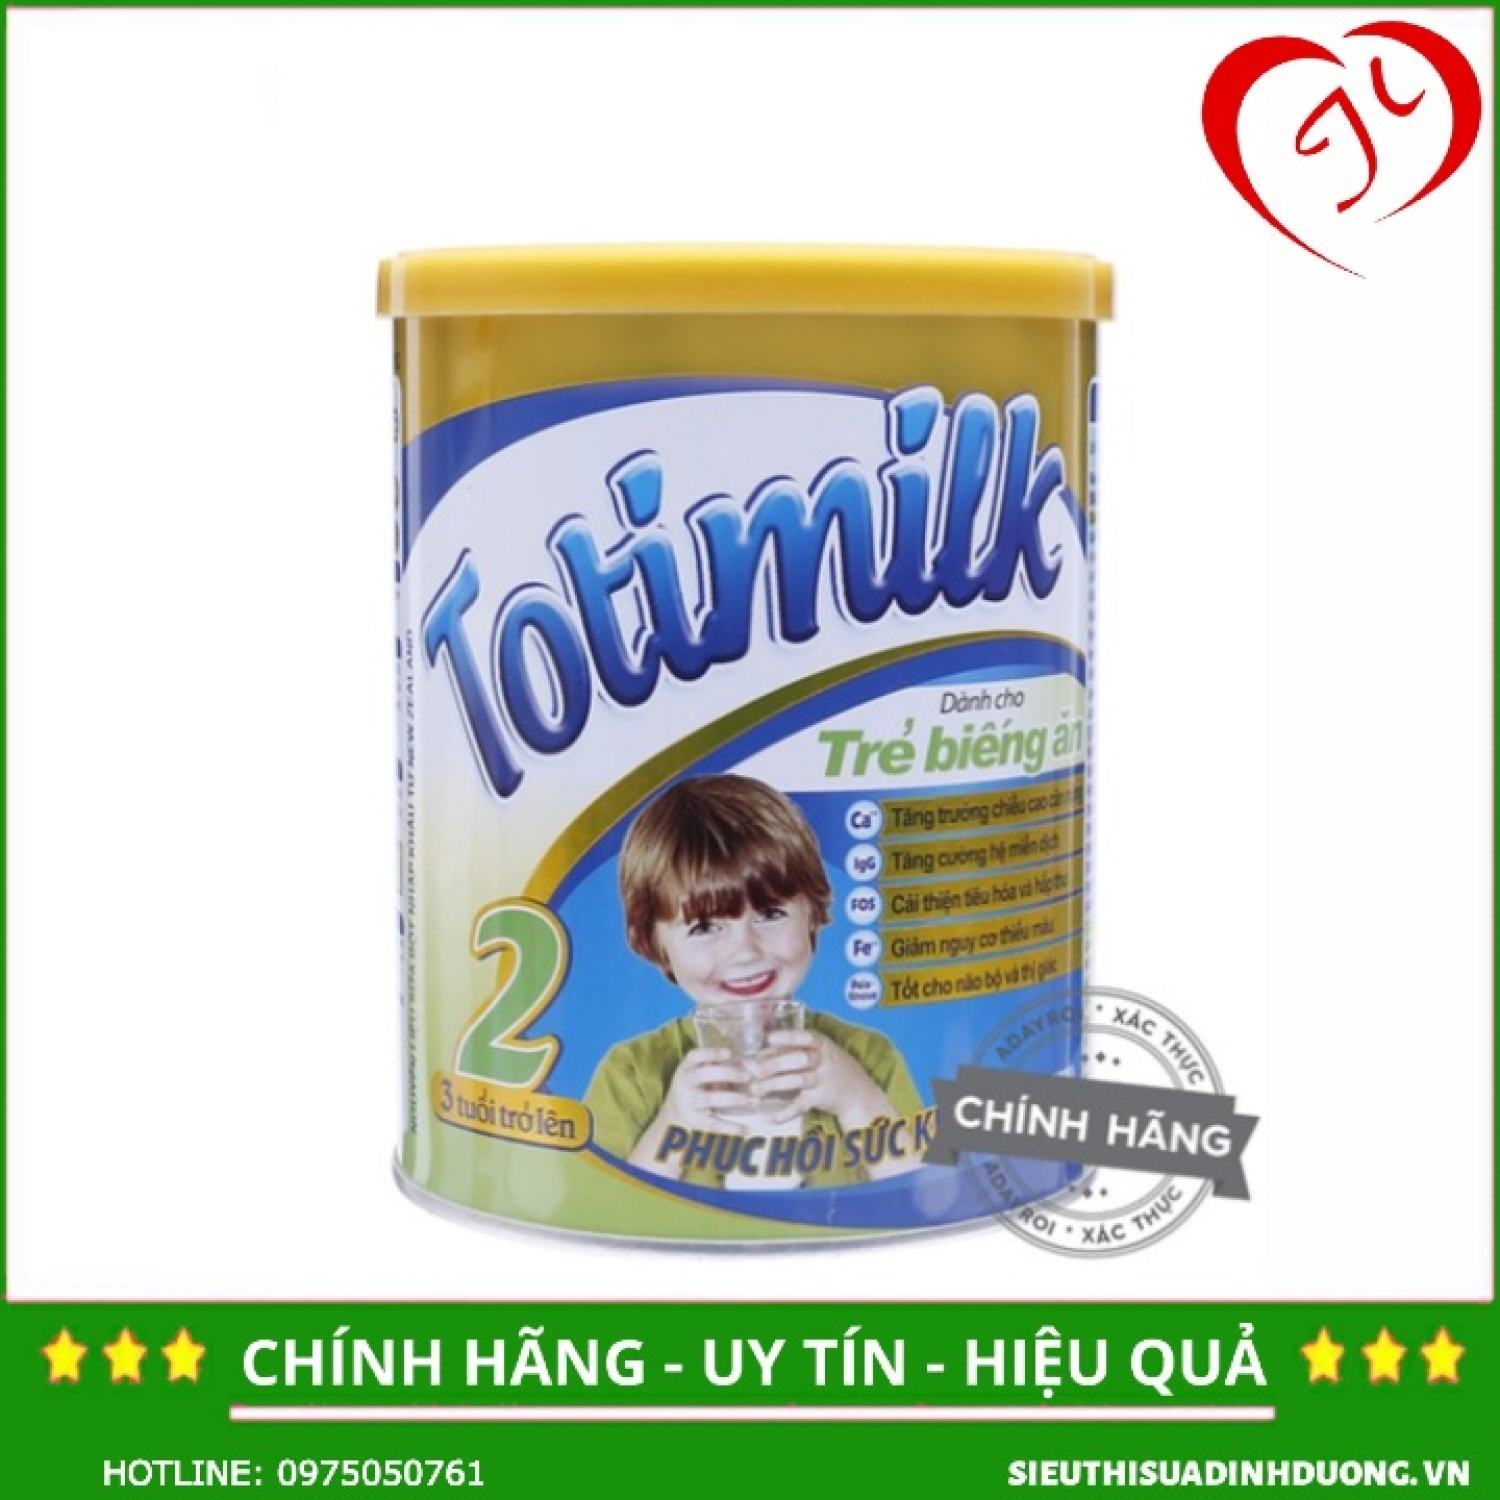 Sữa Totimilk số 2 900g dành cho bé biếng ăn, thấp còi, suy dinh dưỡng